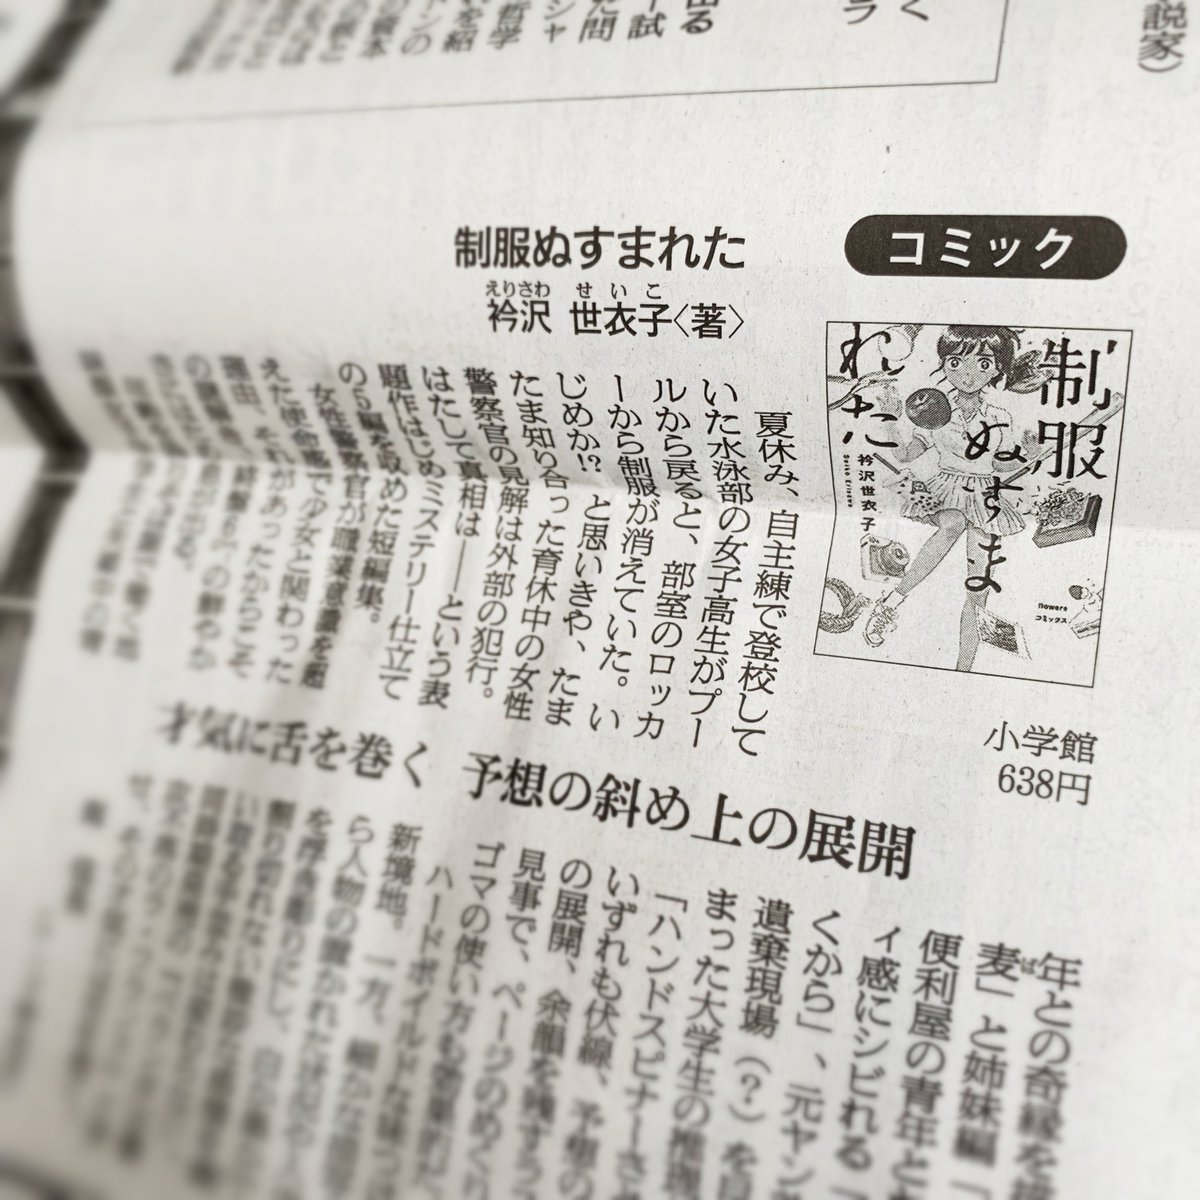 南信長さんが『制服ぬすまれた』を書評して下さいました。朝日新聞デジタル  